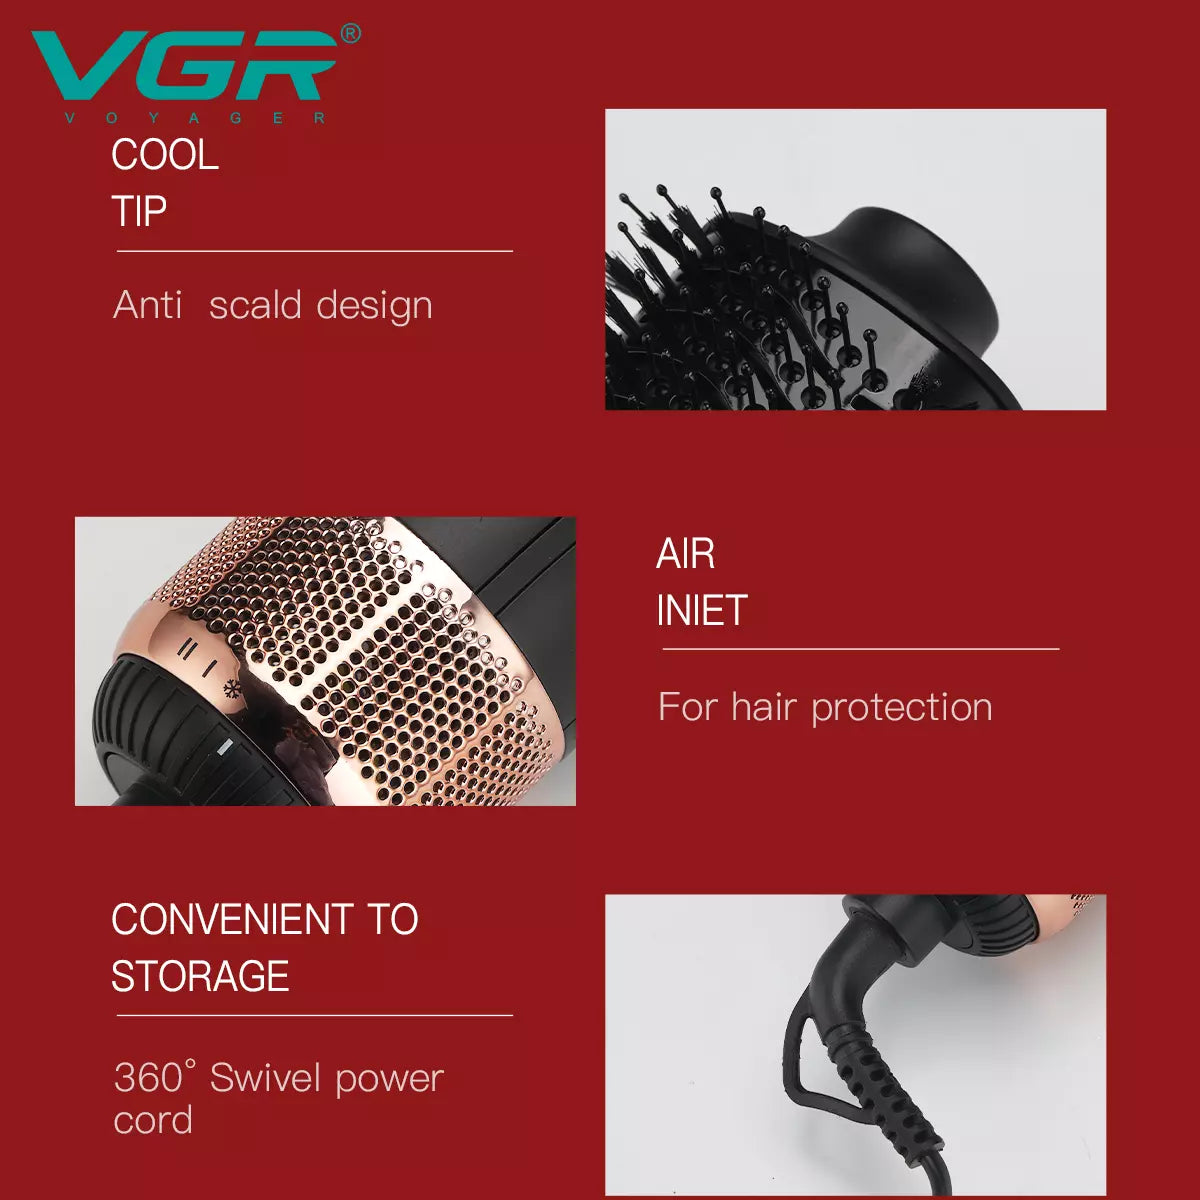 VGR V-492 Hot Air Brush For Women, Black